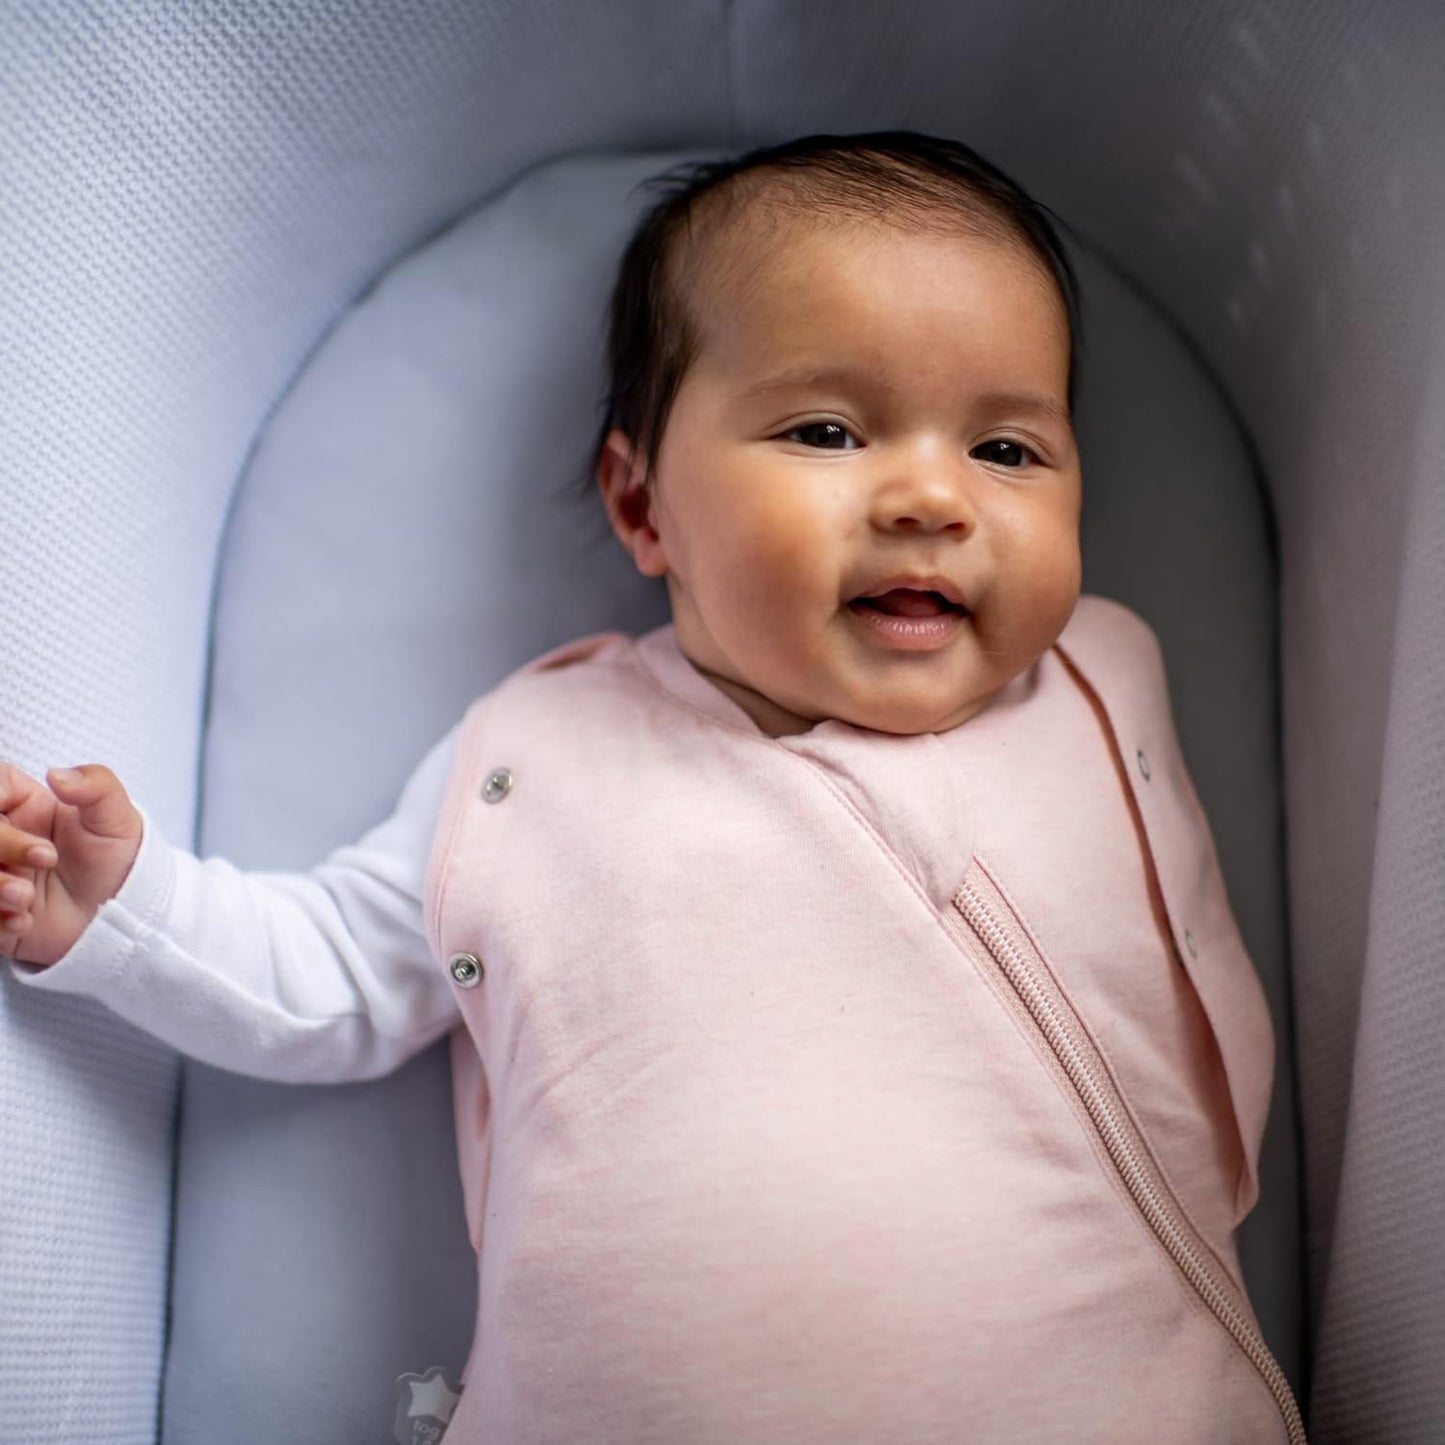 Tommee Tippee Saco de dormir para bebê para recém-nascidos, 3-6 m, 1,0 TOG, o saco Swaddle OriginalGrobag, design saudável para o quadril, tecido macio rico em algodão, blush